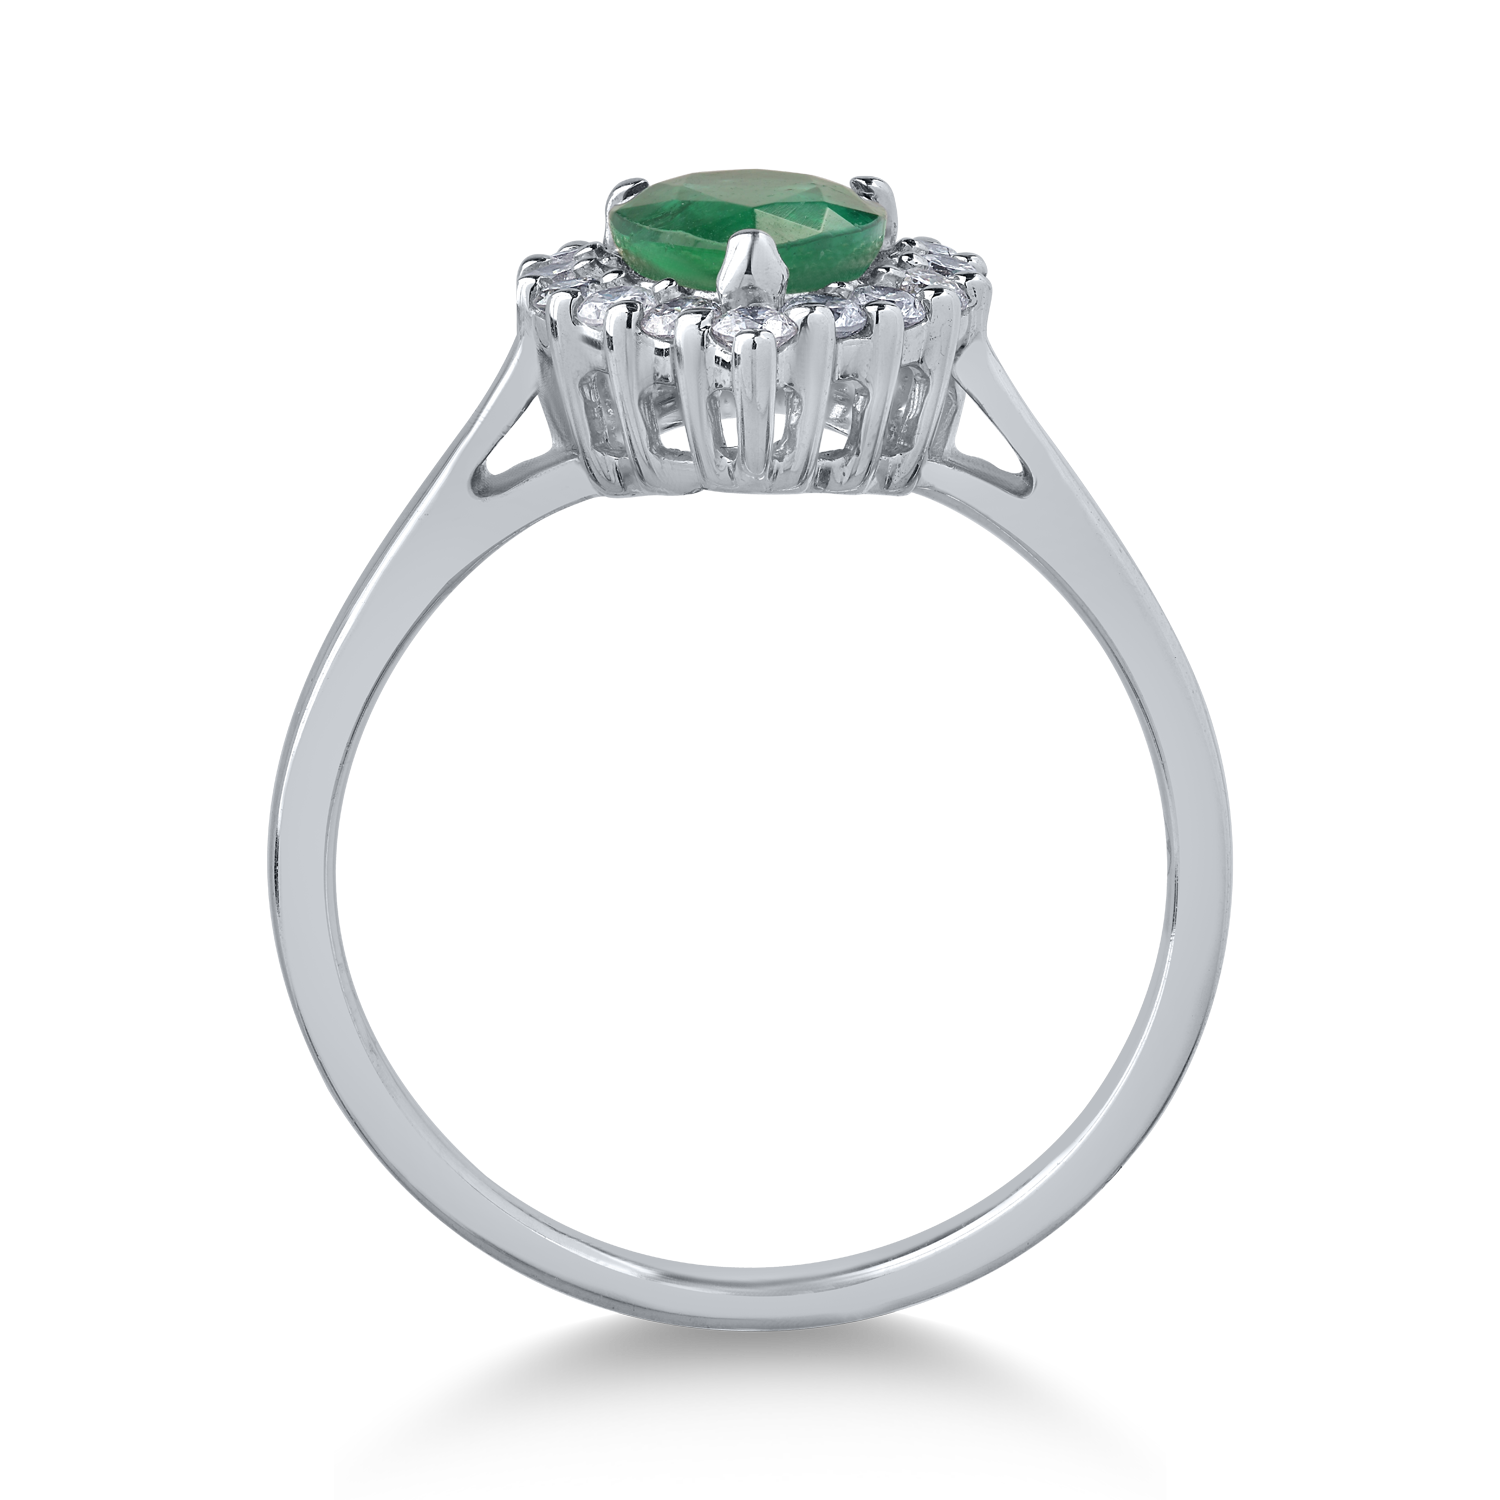 18K fehérarany gyűrű 0.91ct smaragddal és 0.31ct gyémántokkal